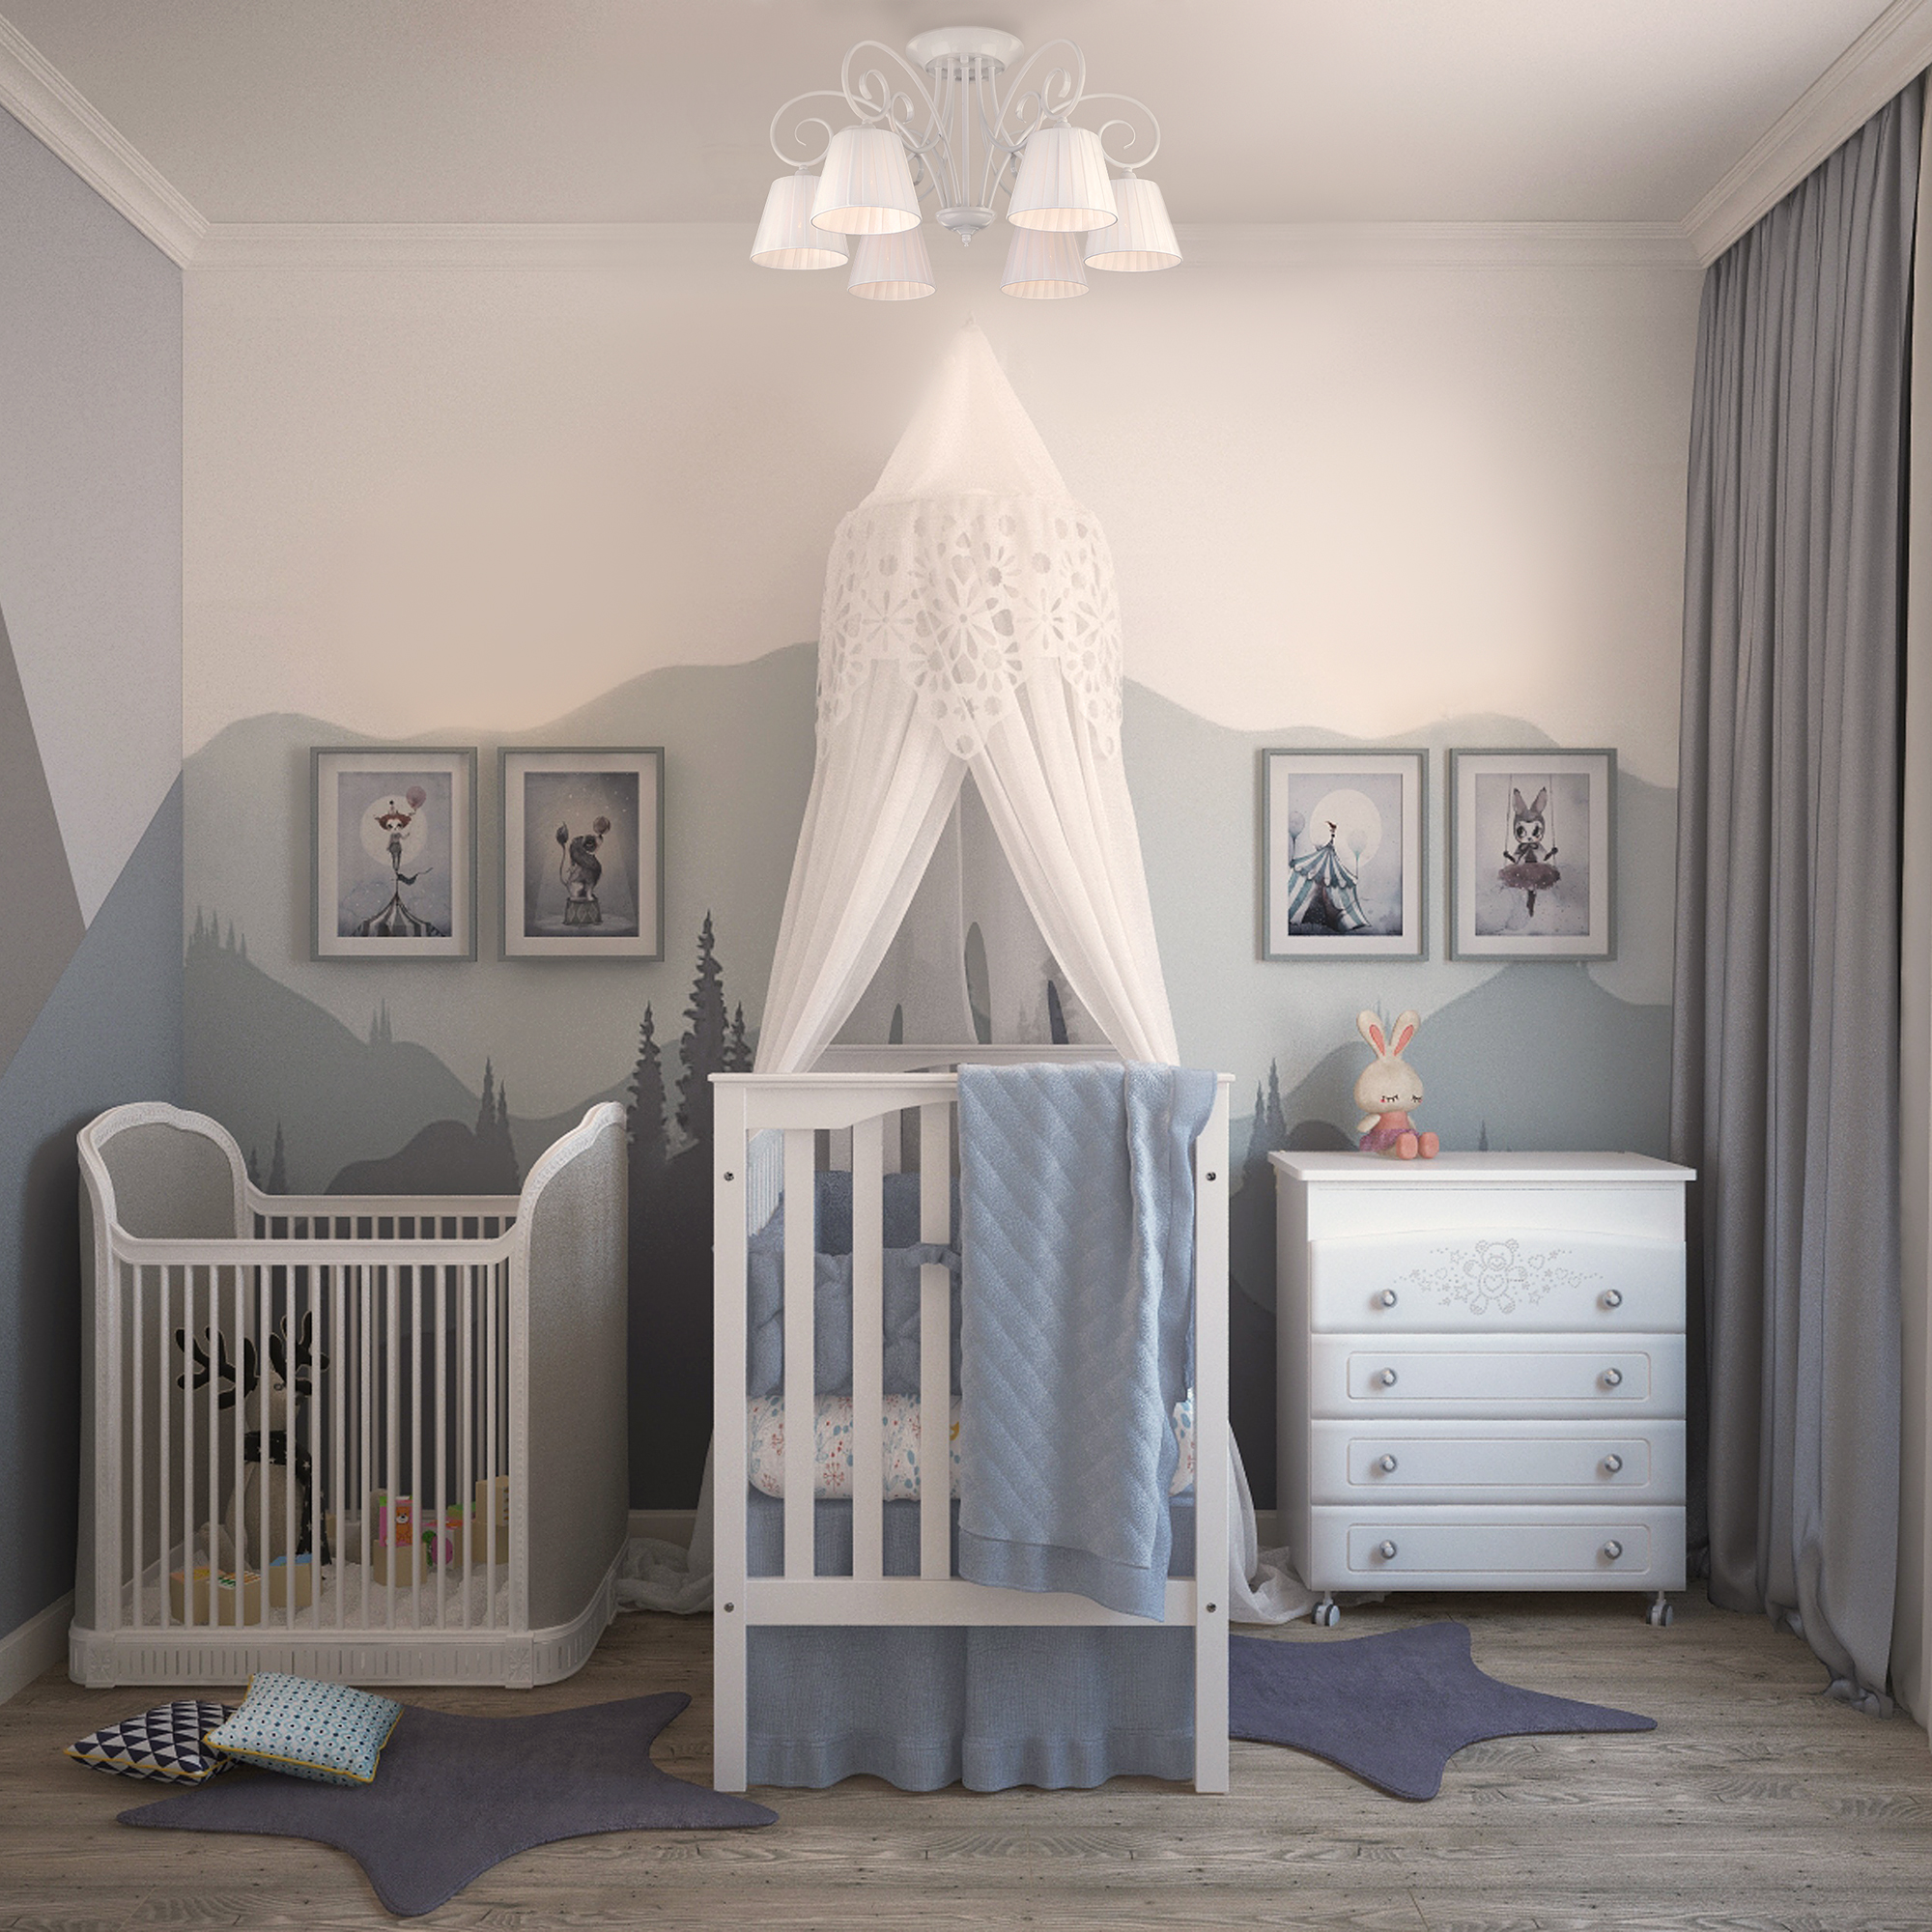 Baby bedroom. Bogate's Severina 303/6. Люстра потолочная 303/6 Bogate's Severina. Комната для новорожденного. Детская комната для новорожденных.